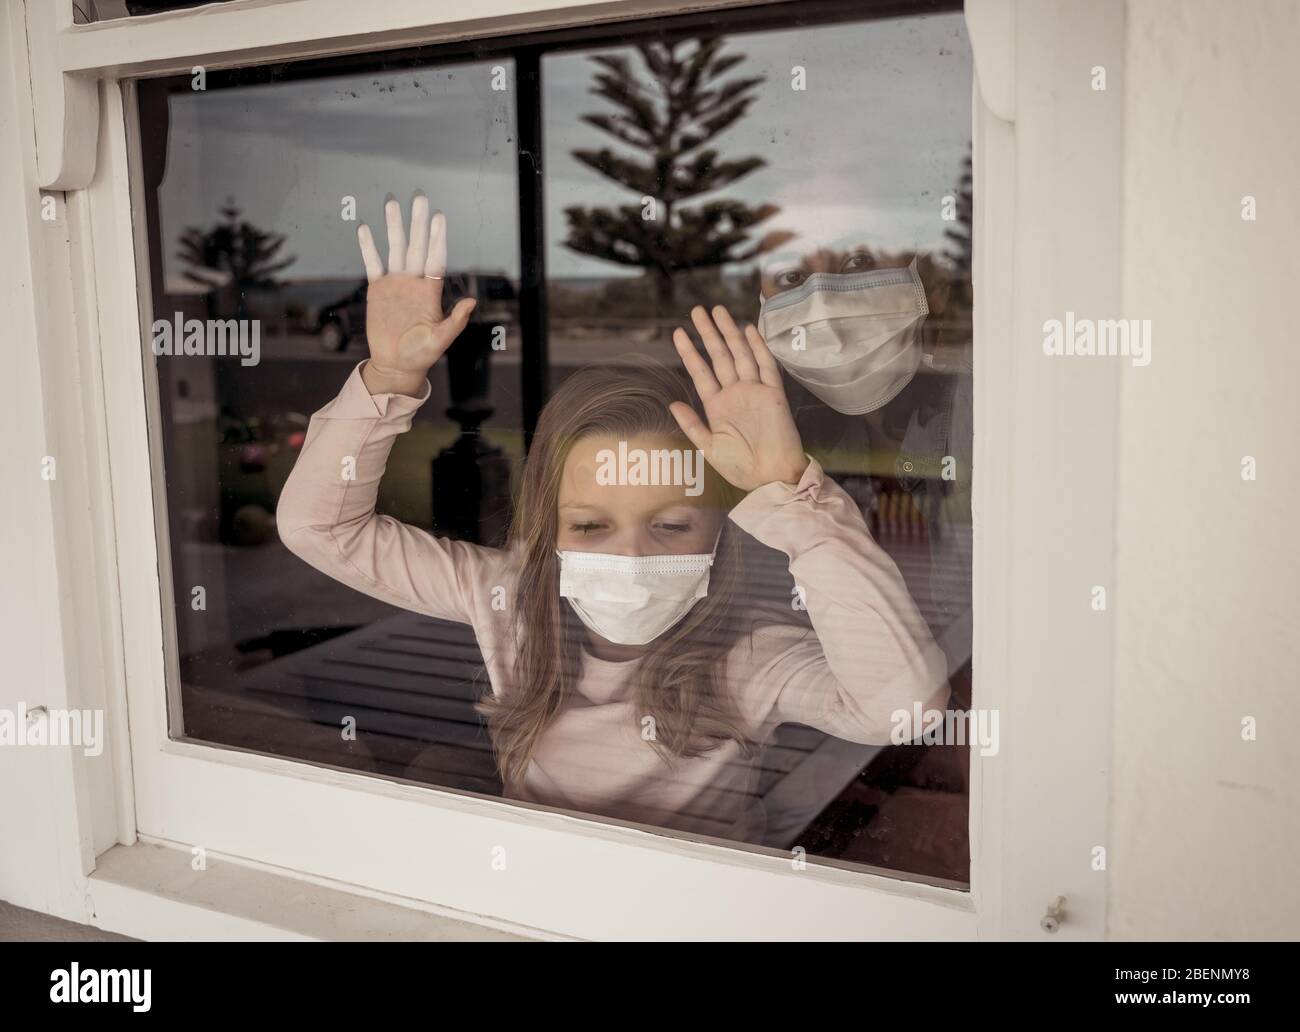 Blocco COVID-19. Bambina solitaria depressa con maschera facciale che guarda attraverso la finestra durante la quarantena. Triste bambino malato in isolamento di auto a casa. Foto Stock